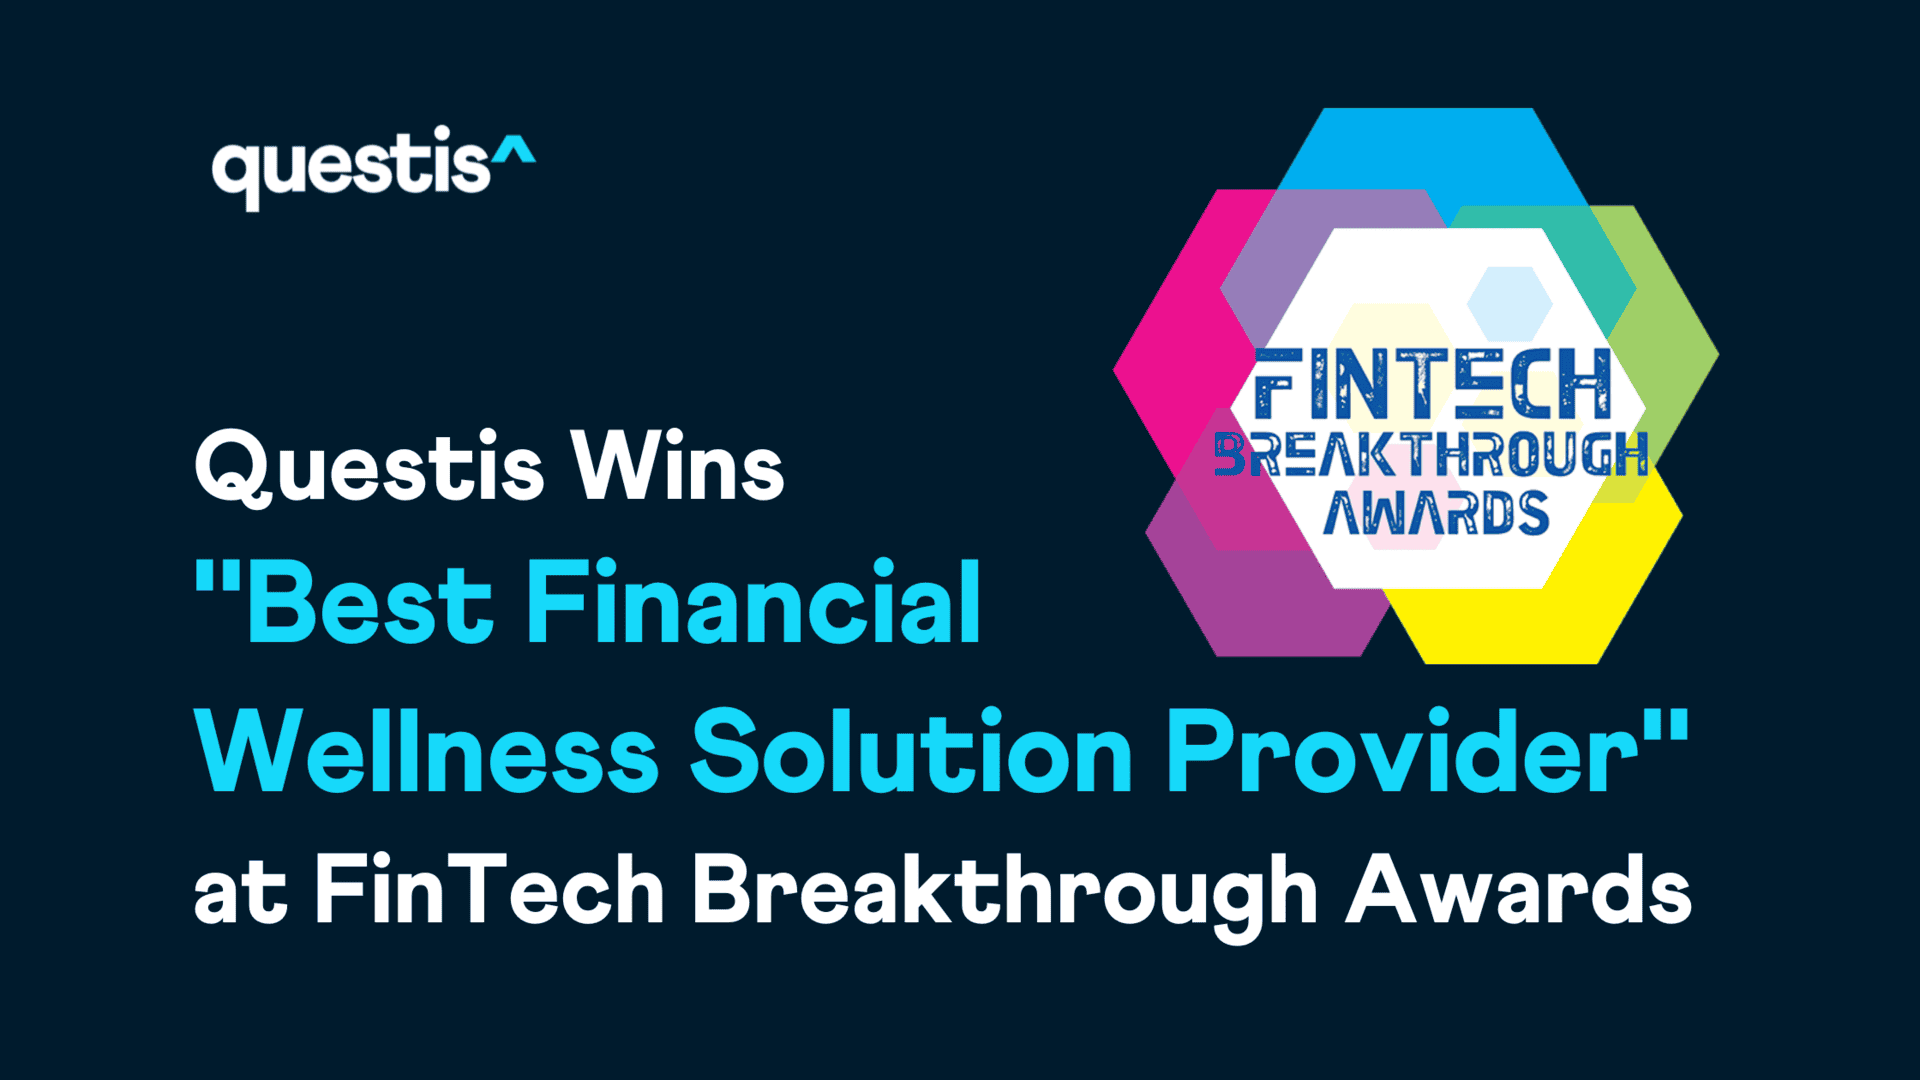 Questis Wins “Best Financial Wellness Solution Provider” at FinTech Breakthrough Awards